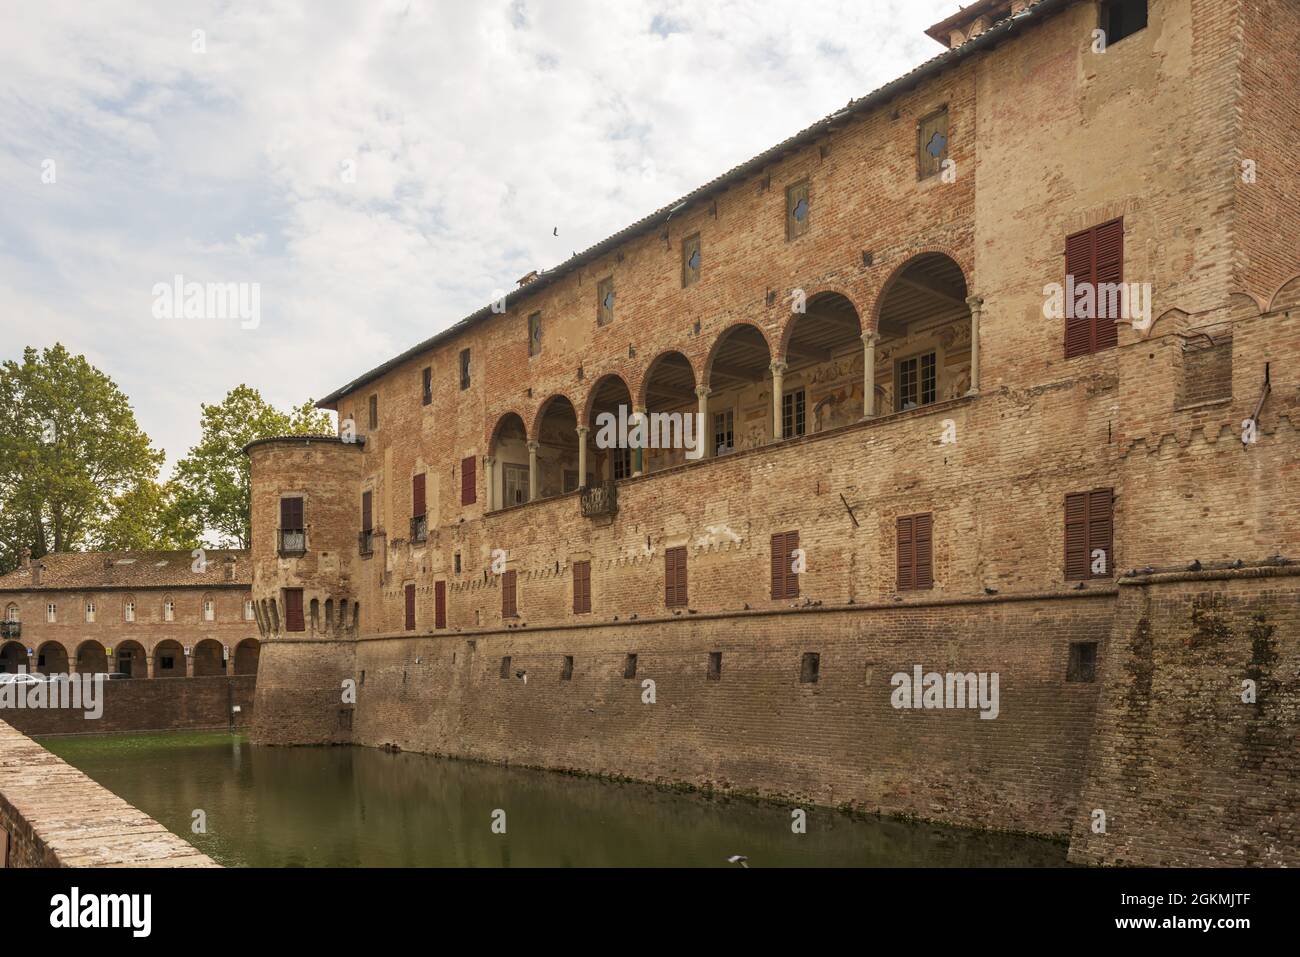 castello fontanellato italia parma 5 Stock Photo